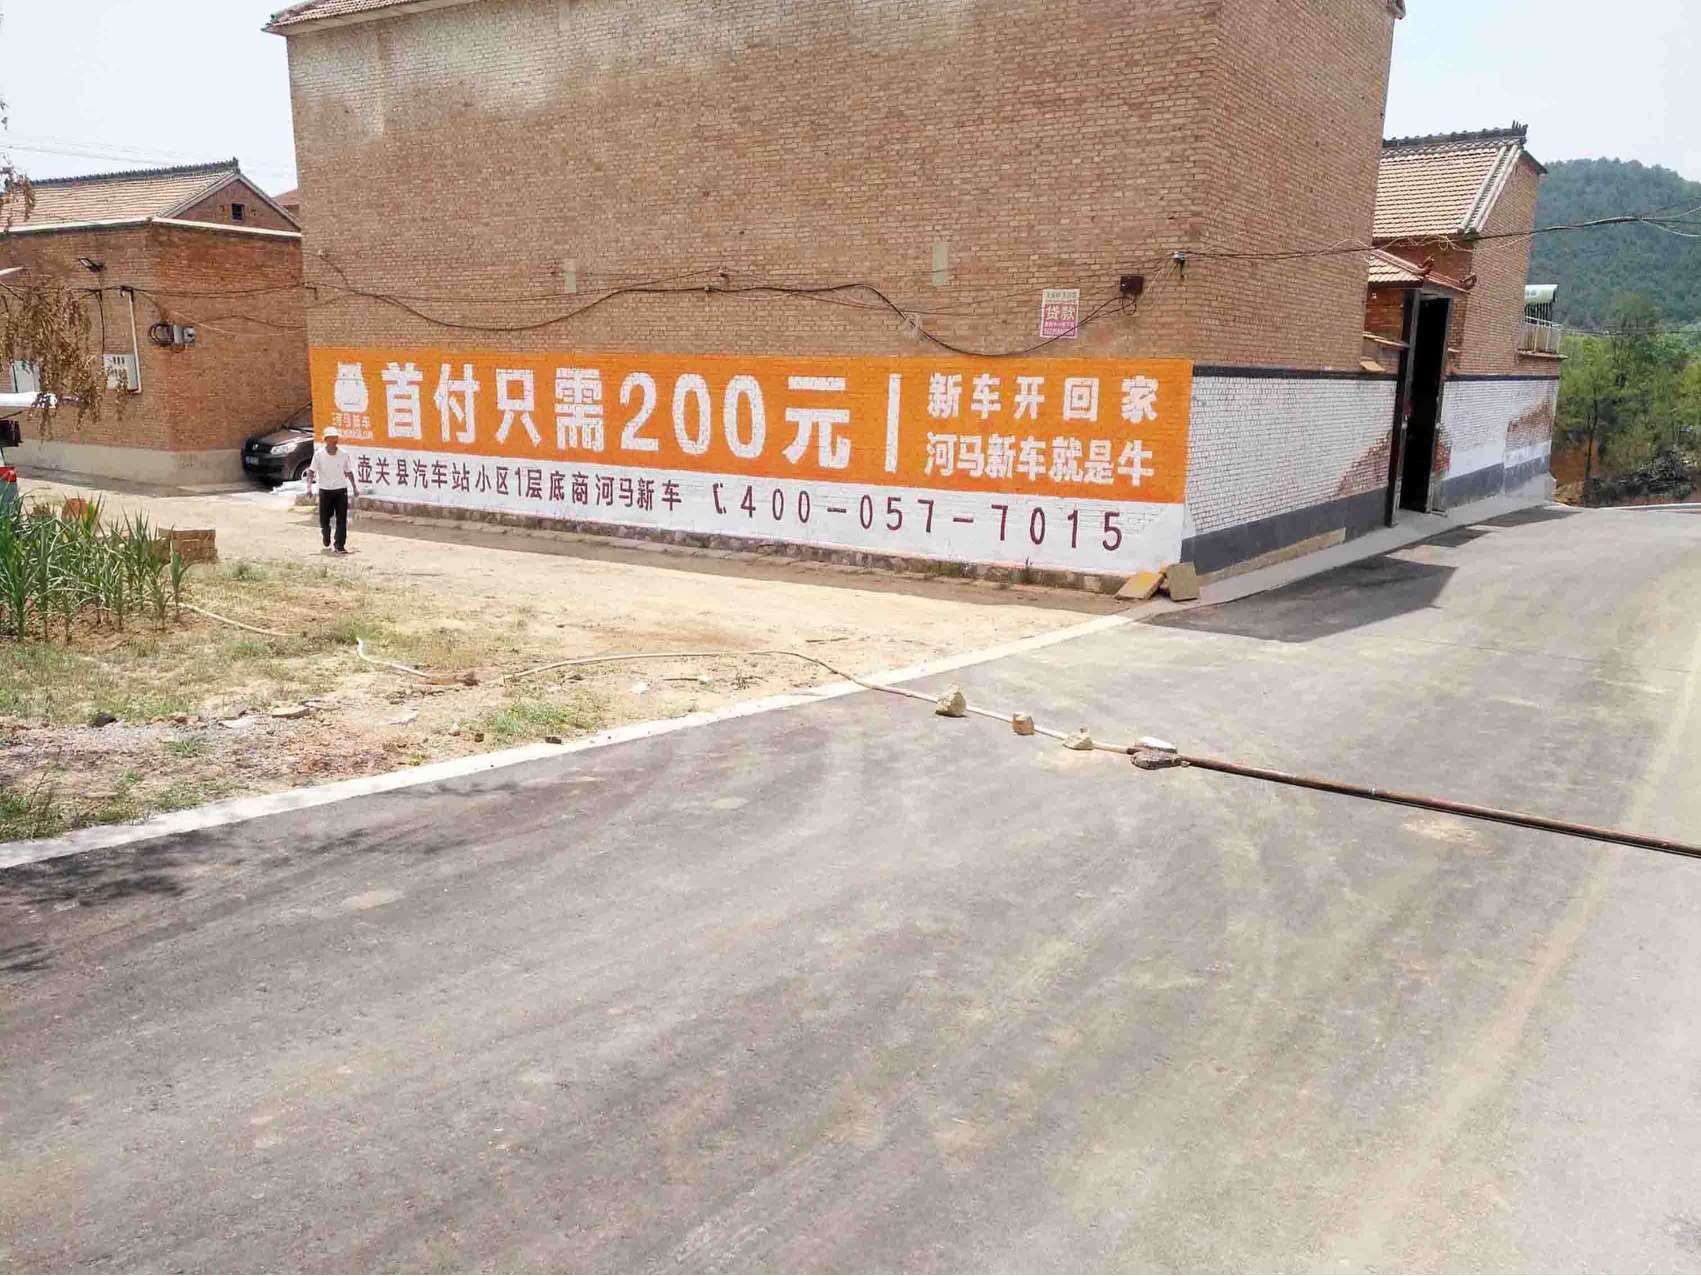 太原墙面广告晋城化工刷墙广告品牌宣传好途径